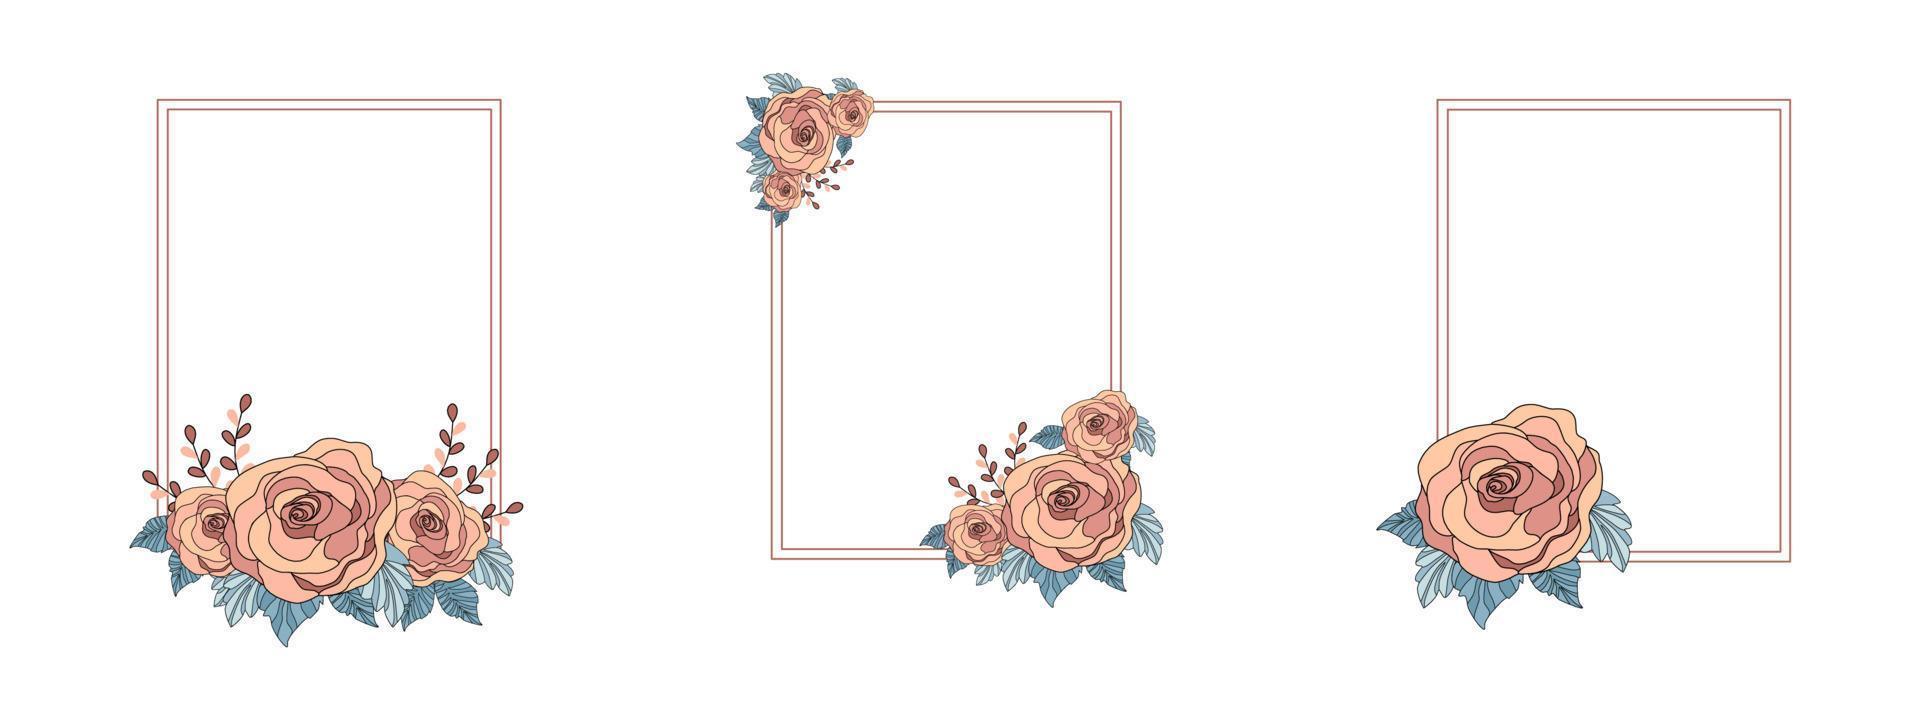 Vintage Rosenmuster Rahmenset weißer Hintergrund zum Dekorieren von Karten, Hochzeiten, Valentinstag, Postkarten, Einladungen, Rahmen usw. vektor